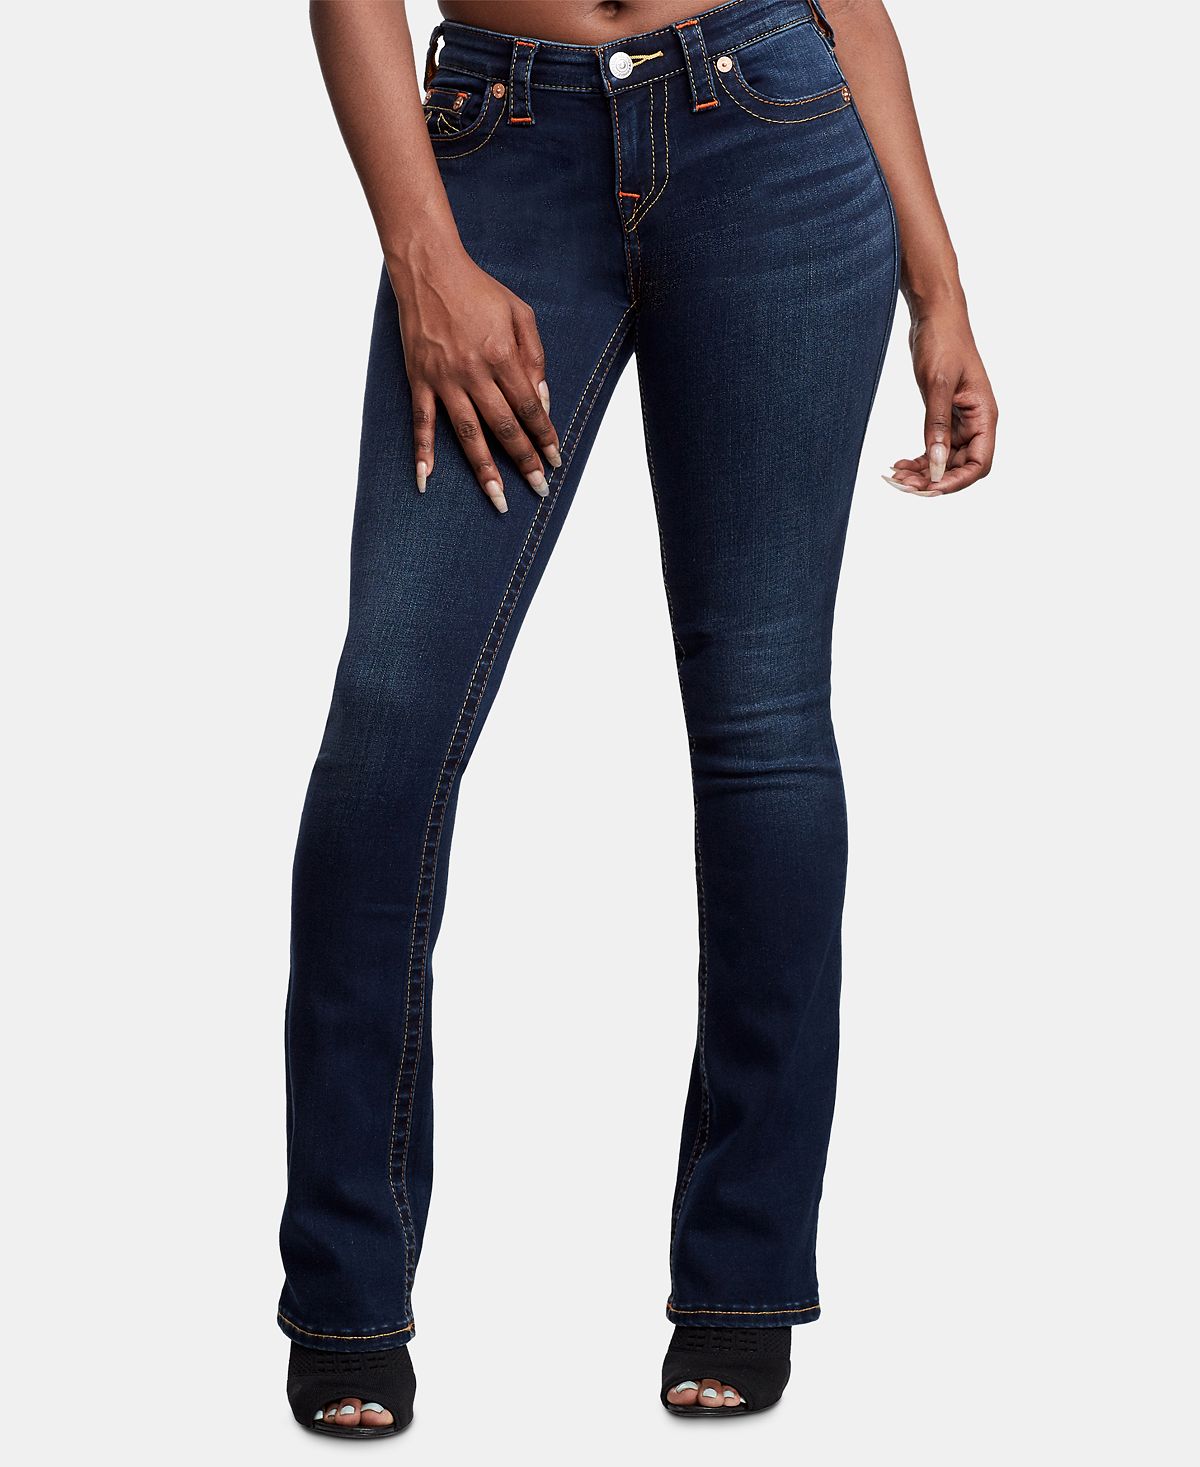 Эластичные прямые джинсы Billie со средней посадкой True Religion фотографии